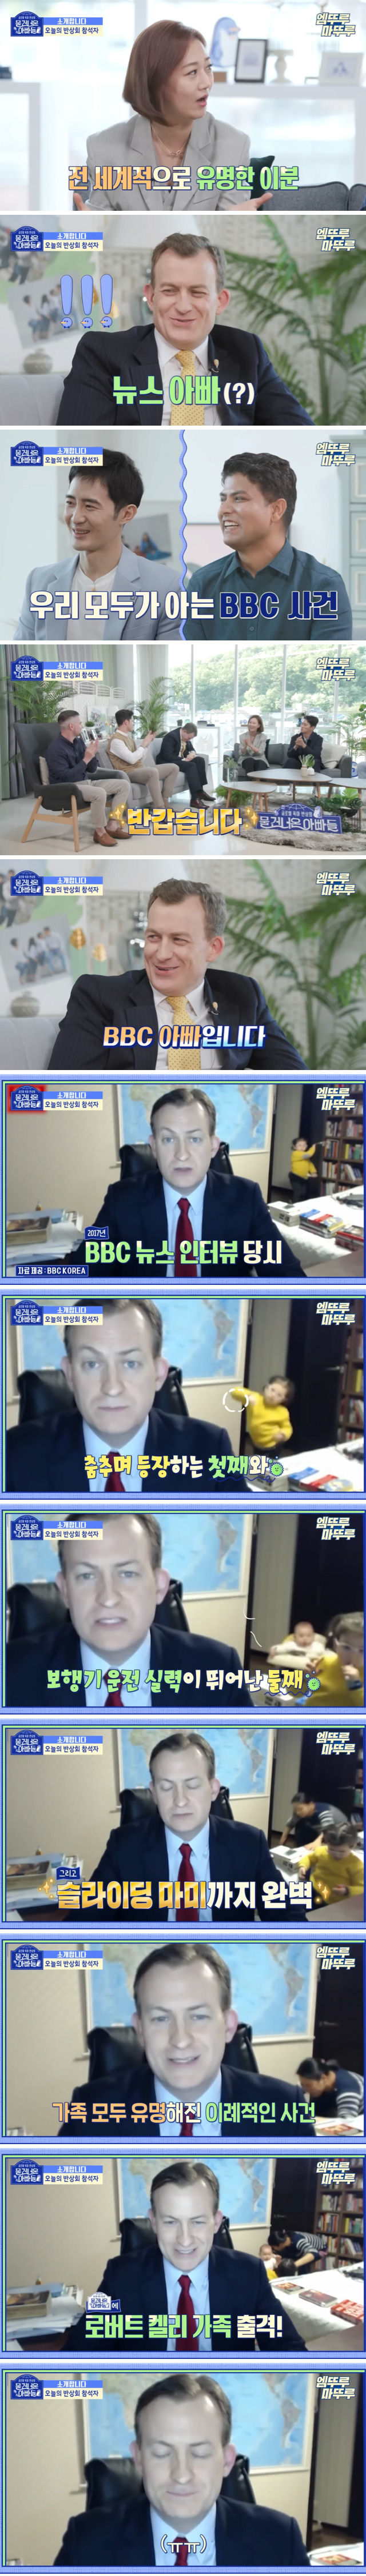 BBCで有名になった韓国の赤ちゃんたちの近況